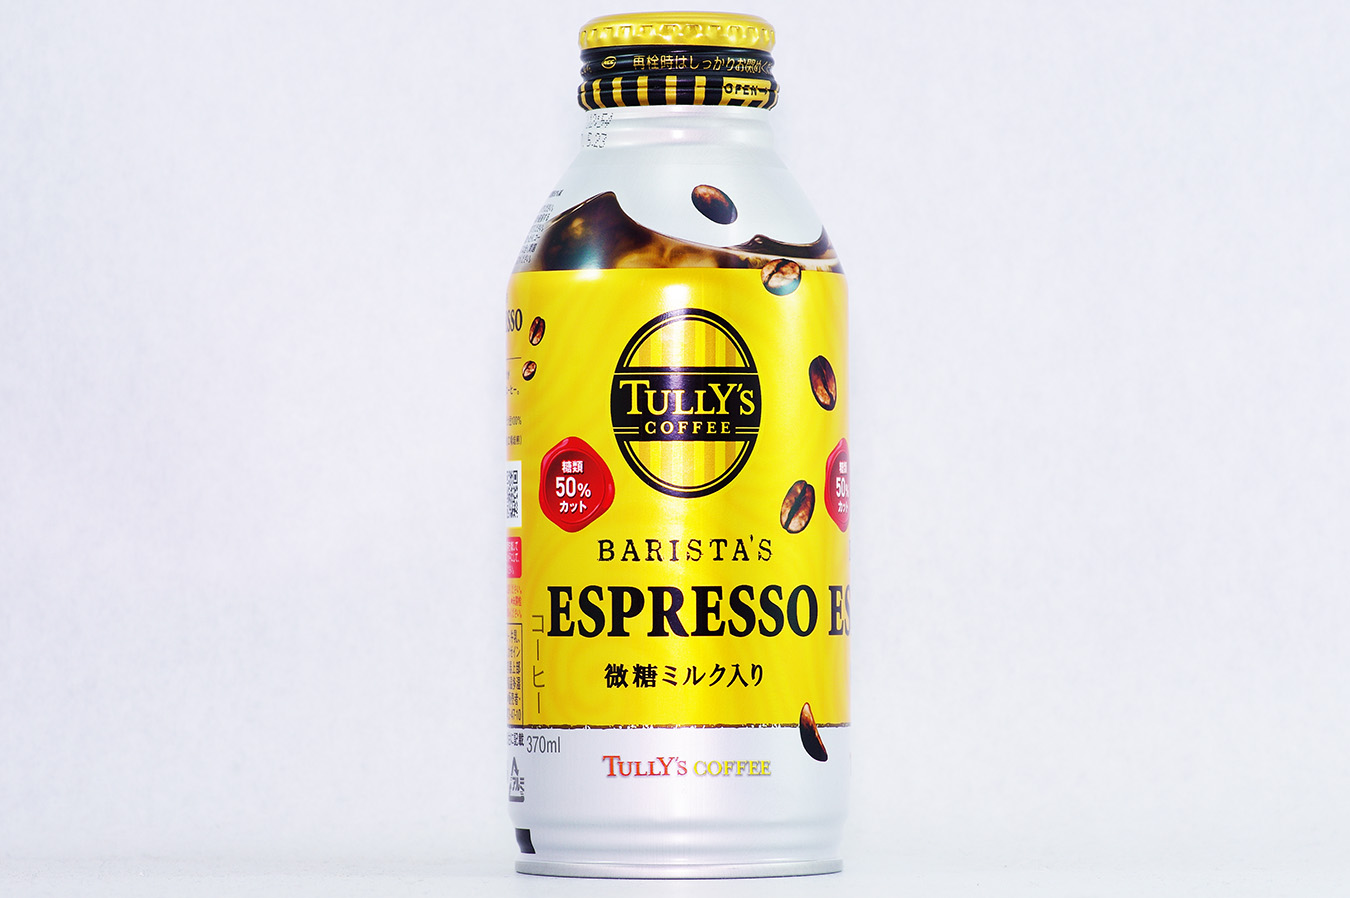 TULLY'S COFFEE BARISTA'S ESPRESSO 2016年10月